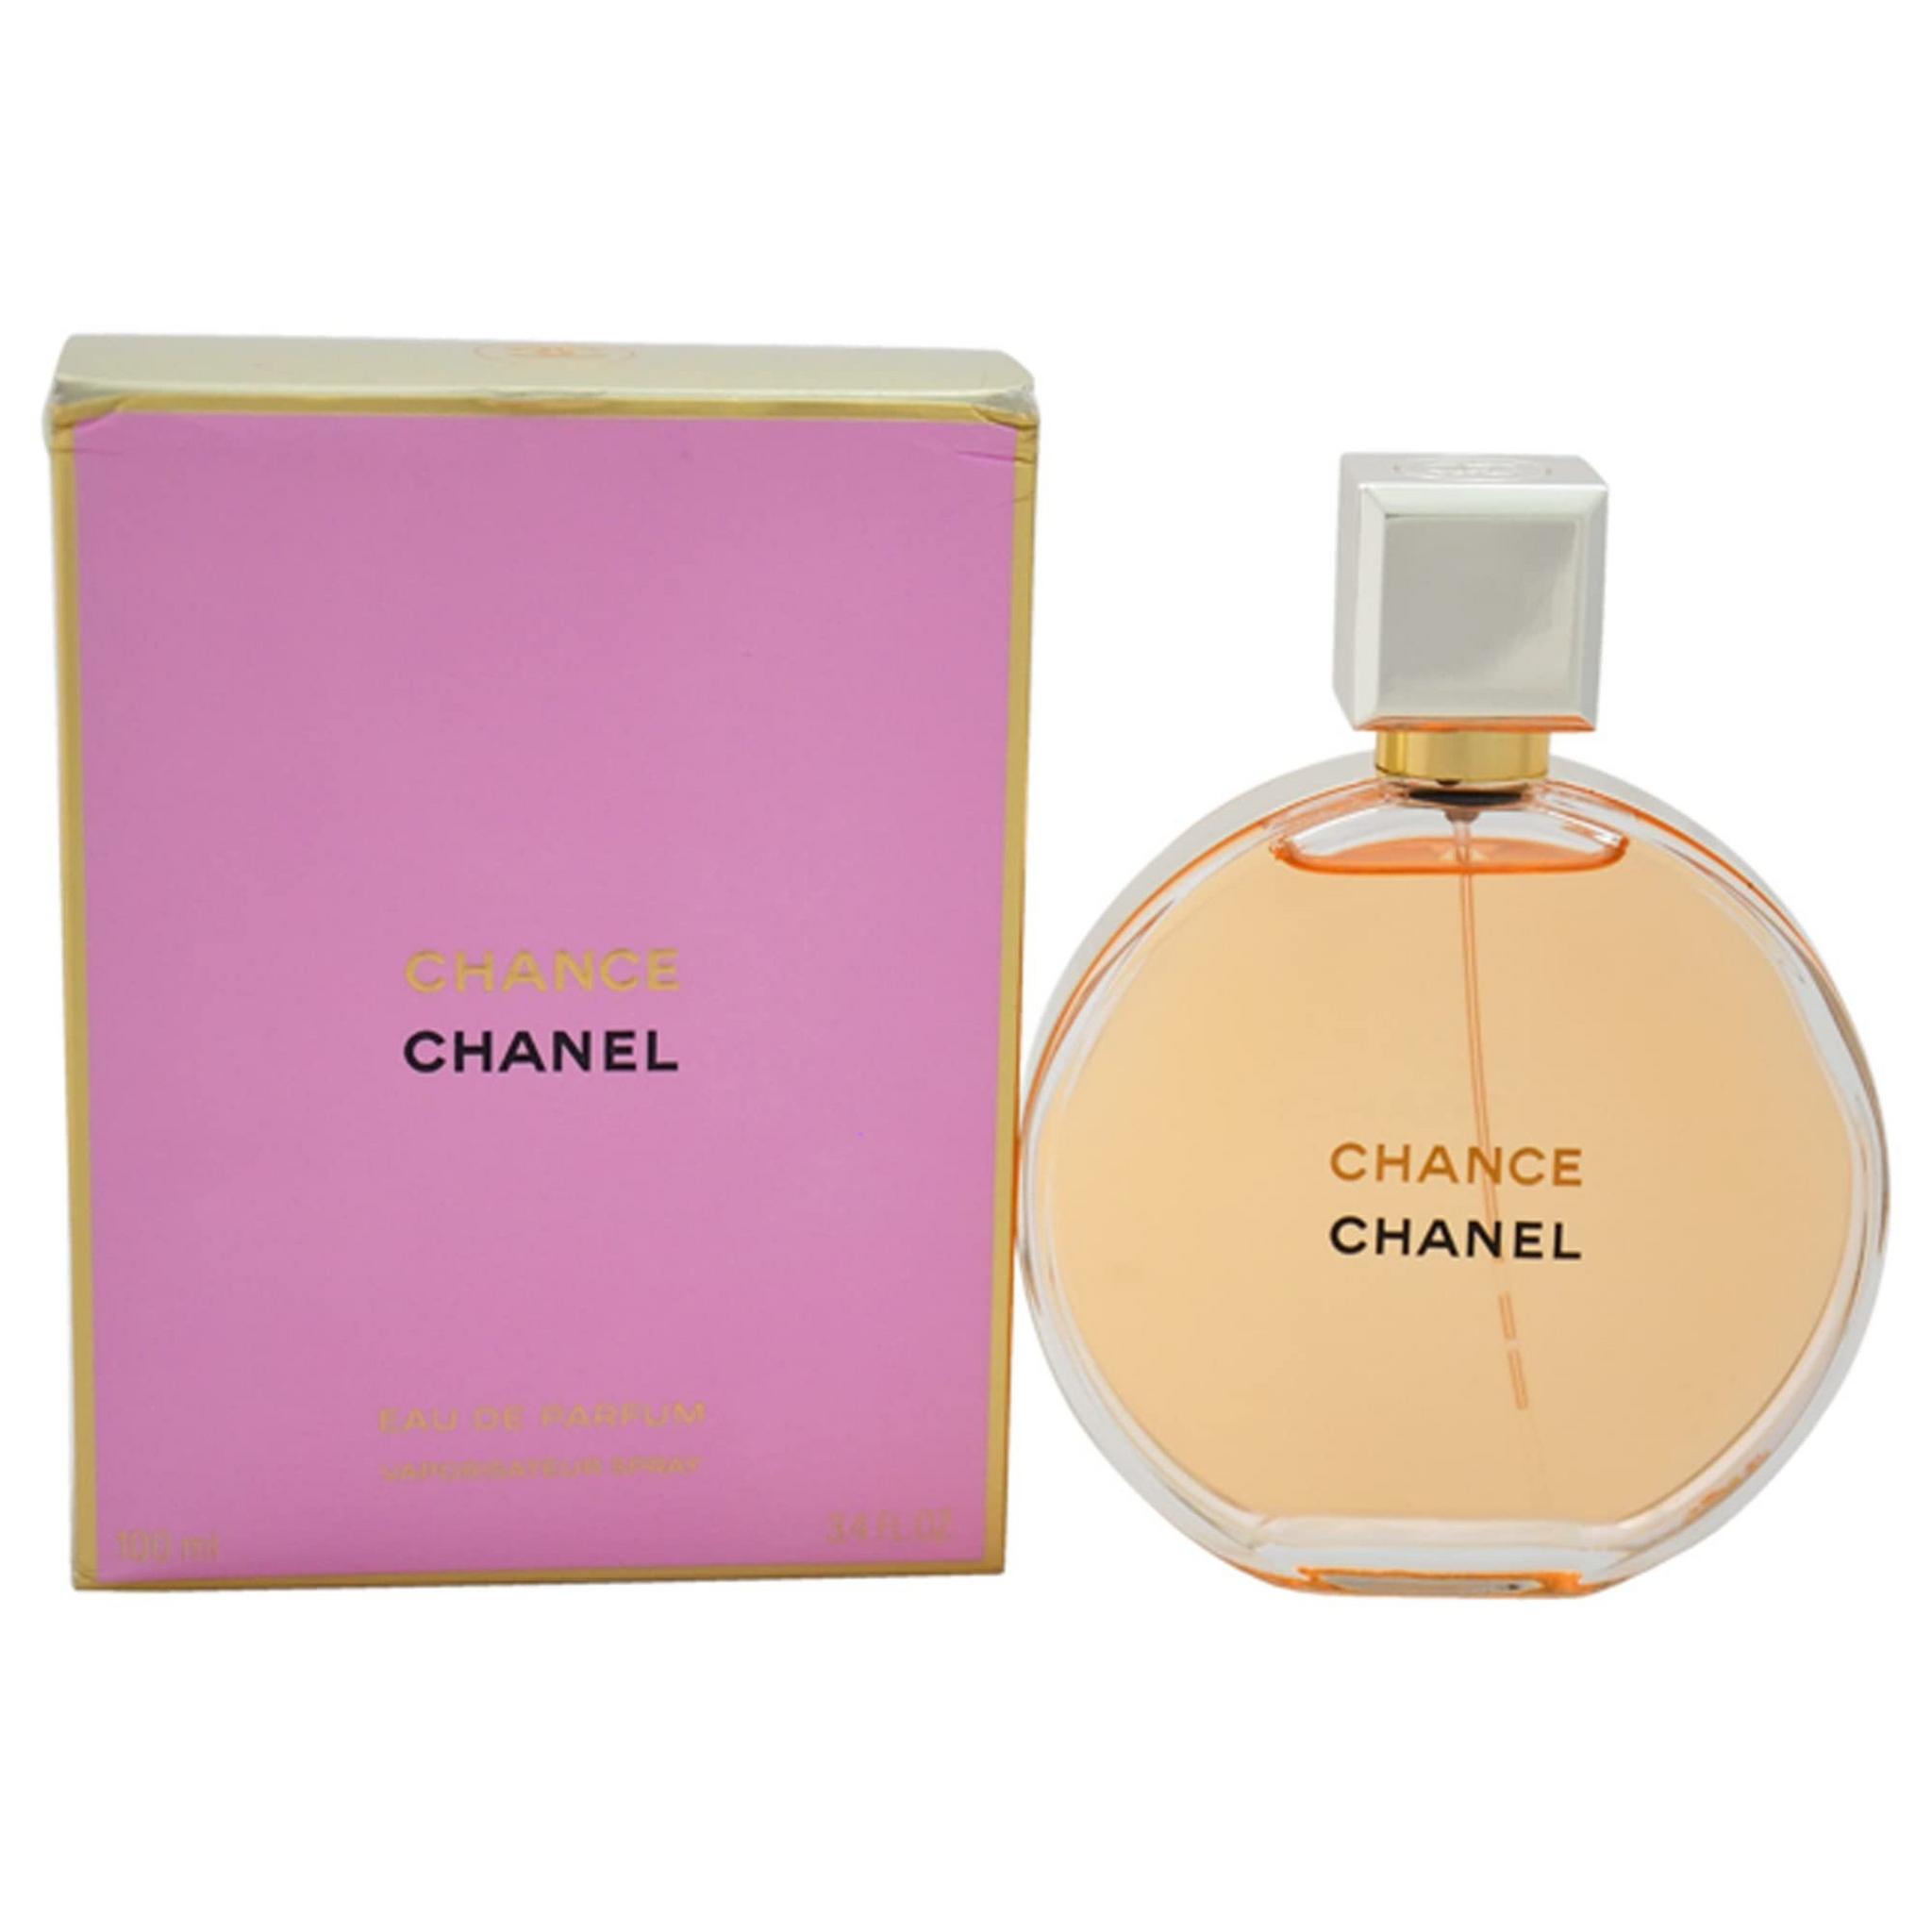 Chanel Chance For Women 100 ml Eau de Parfum